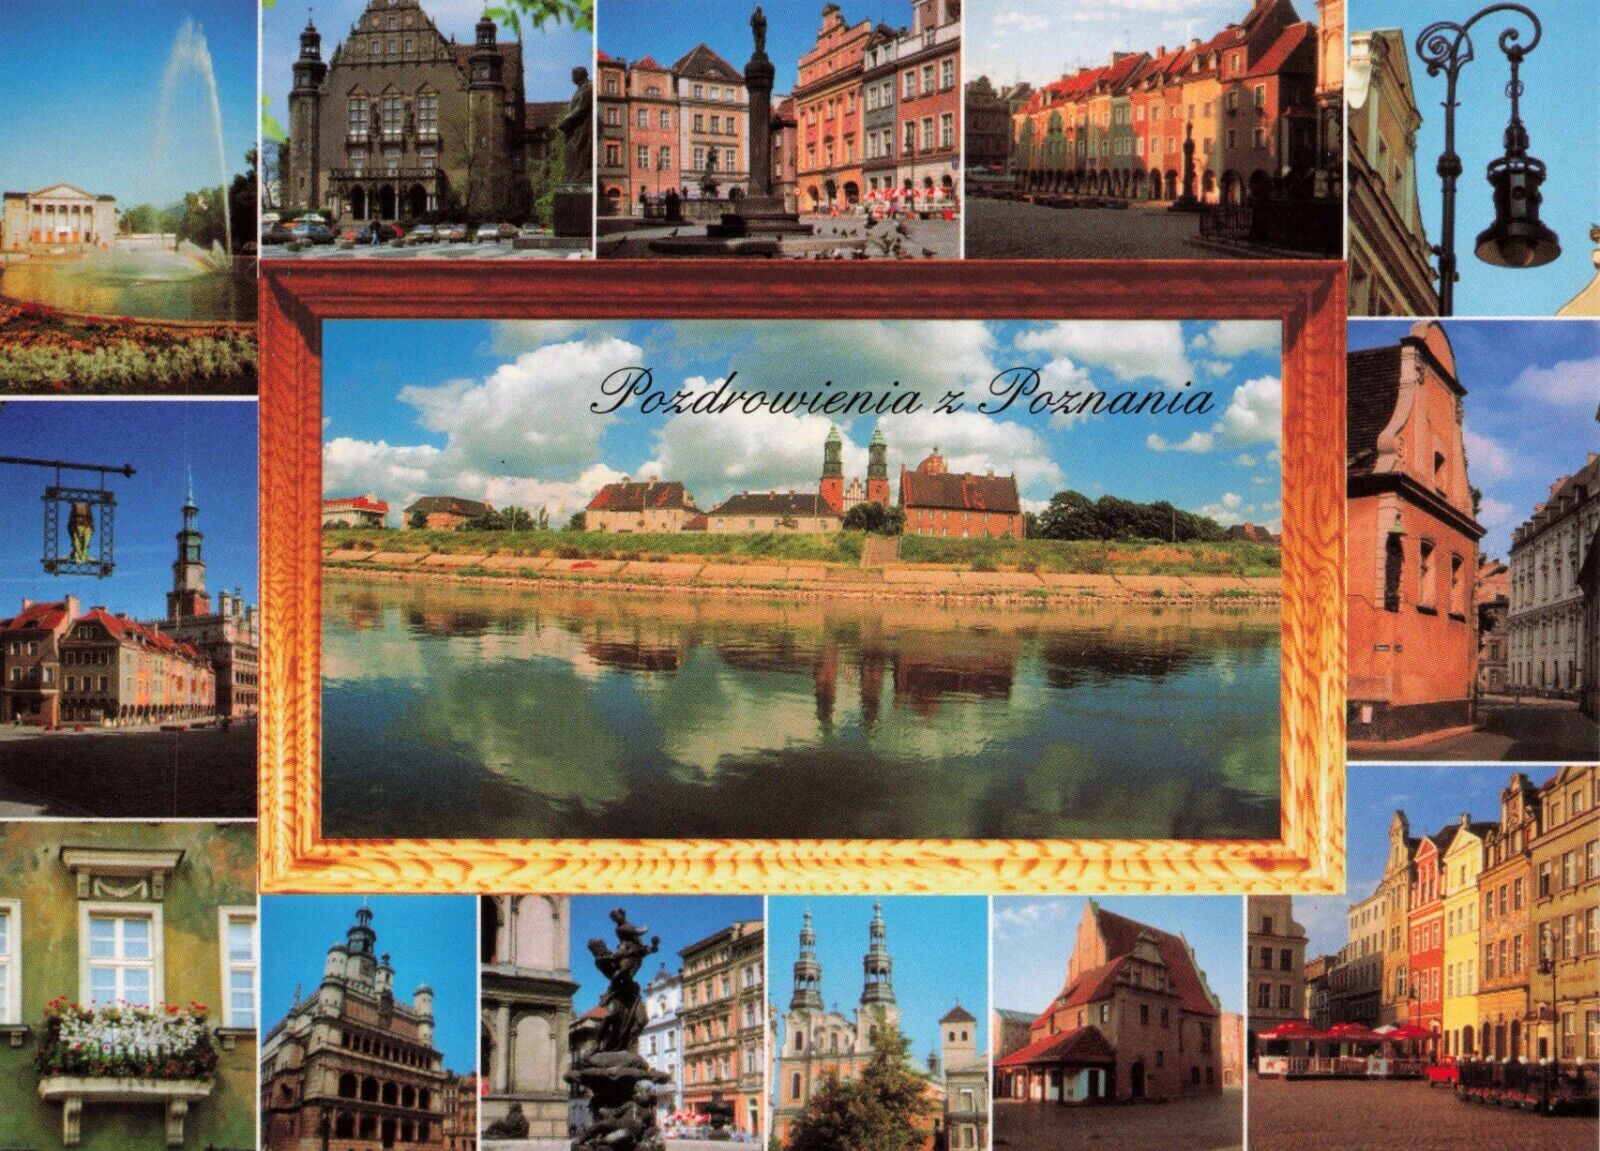 Postcard Pozdrowienia z Poznania Post Card Sights Scenery Gallery